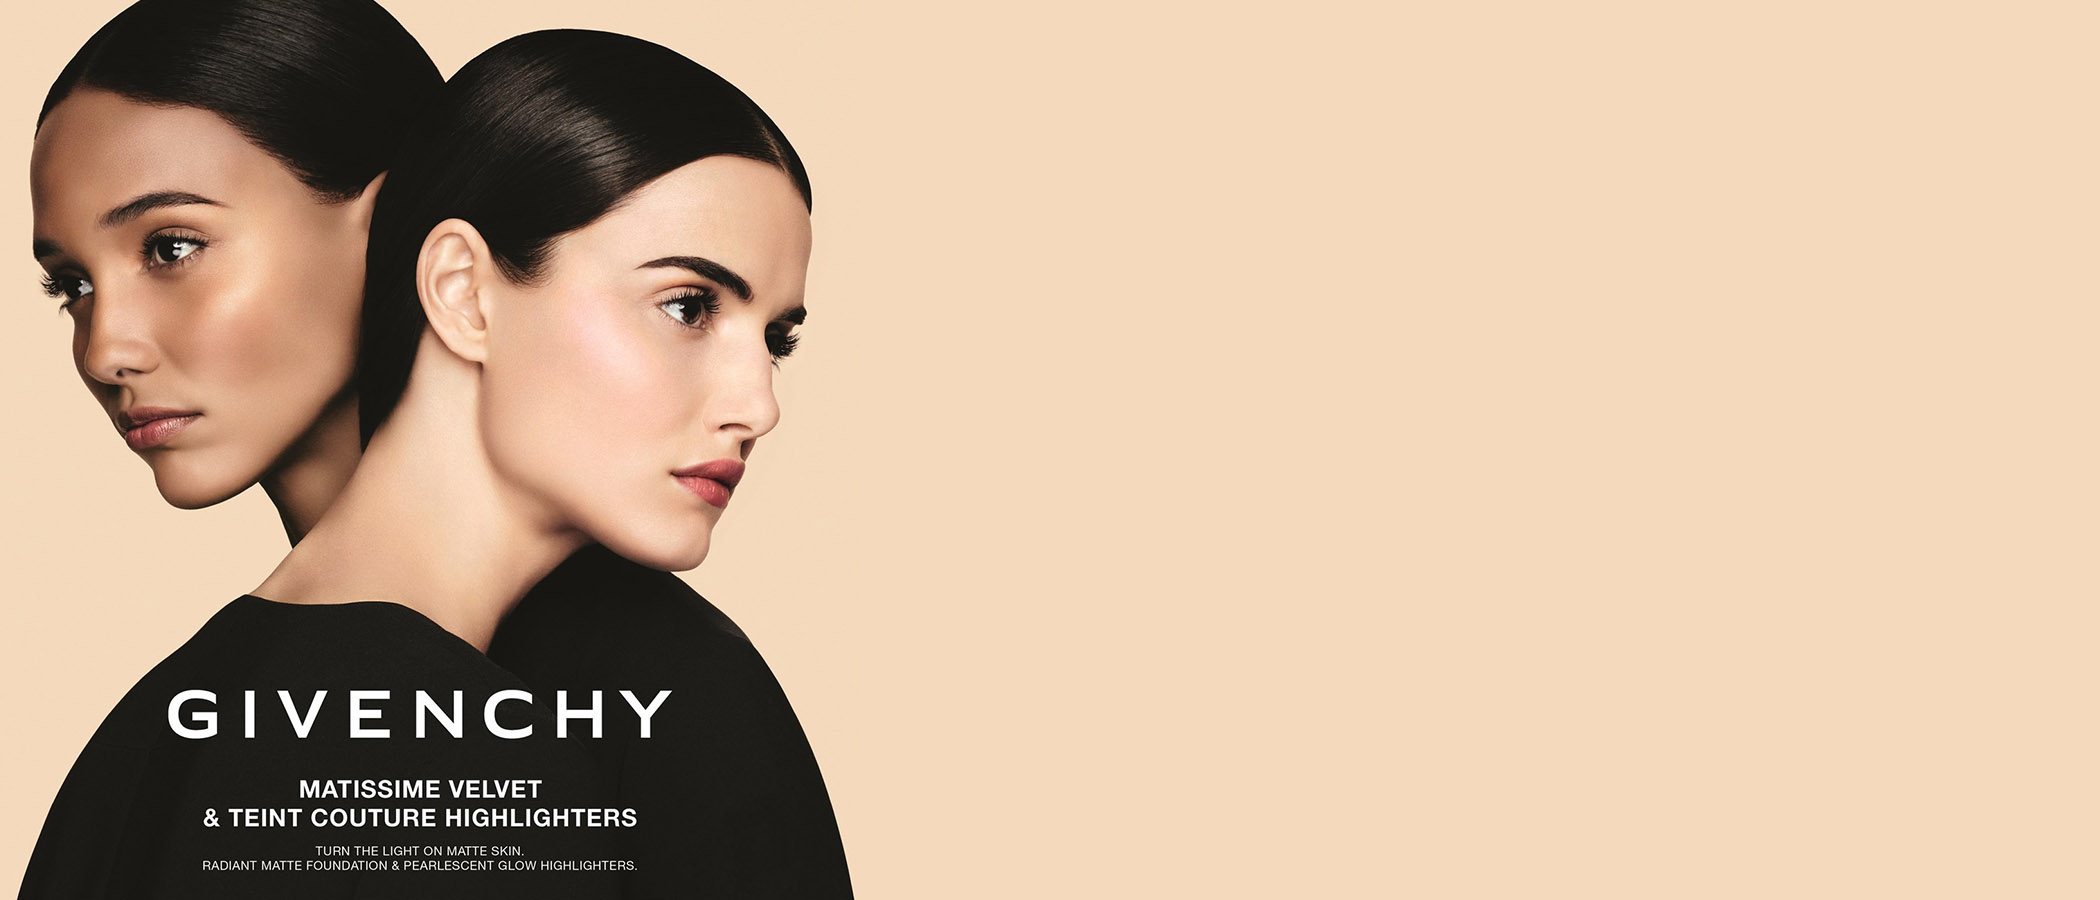 Givenchy amplía su línea de belleza con iluminadores, labiales y nuevos tonos de la base 'Matissime Velvet'